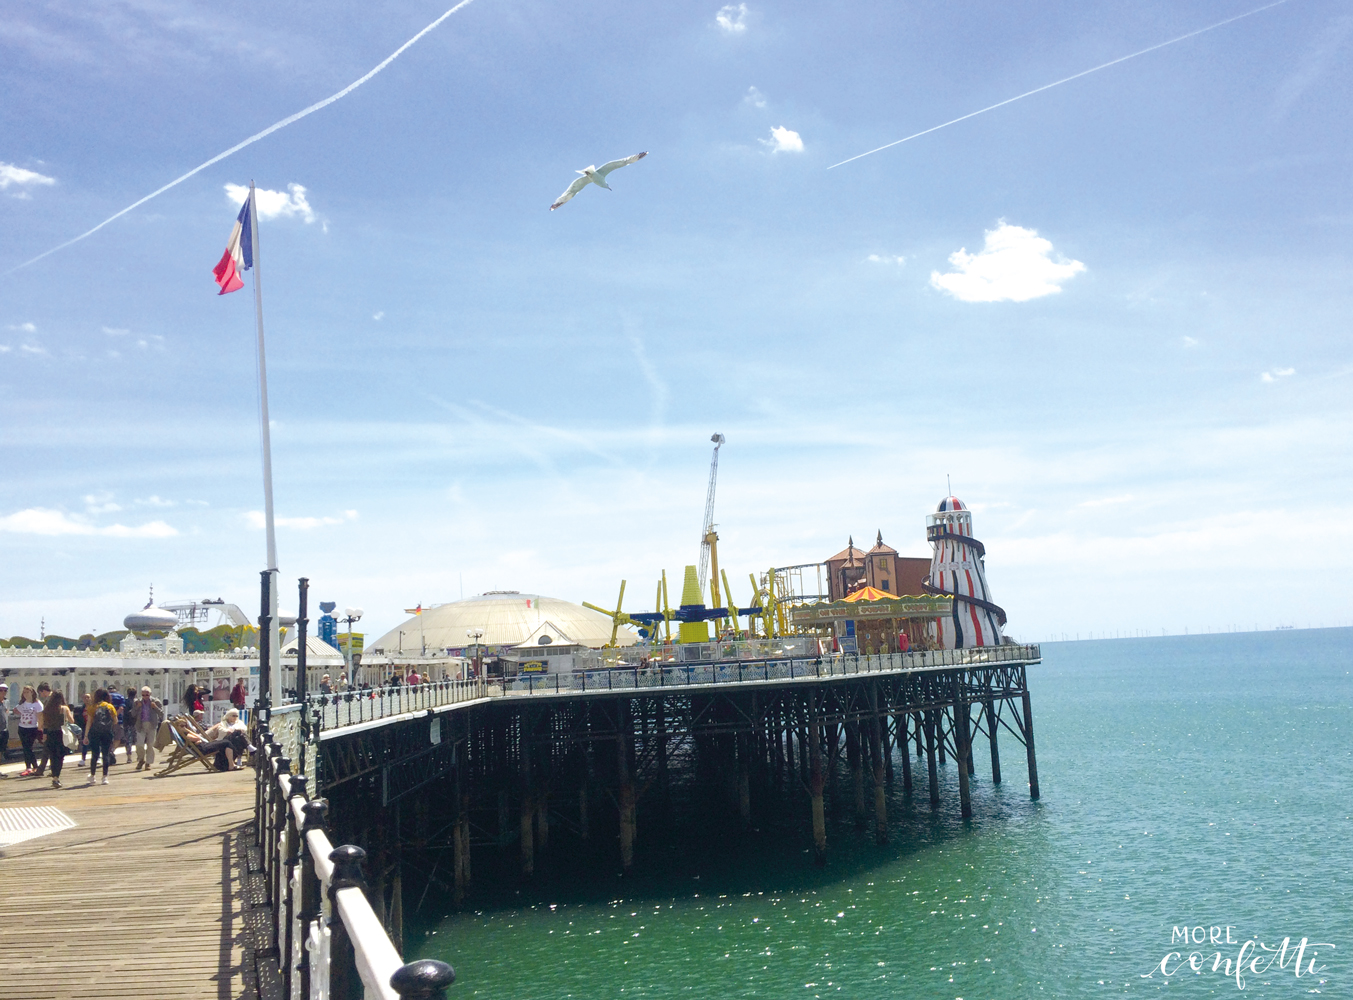 Brighton - engliches Seebad - für jeden etwas dabei - moreconfett.de